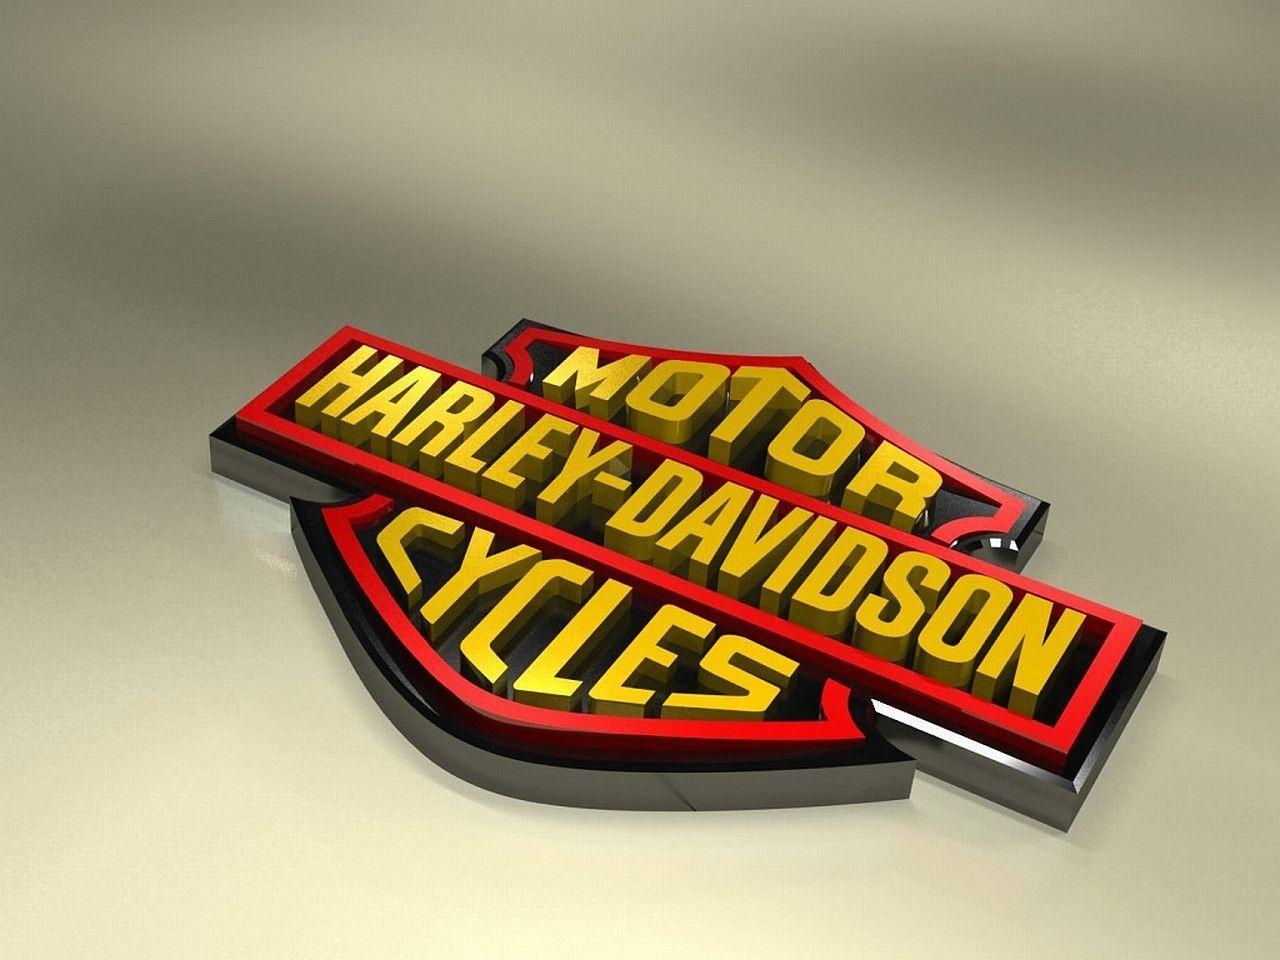 Harley Davidson Wallpaper. Harley Davidson Background